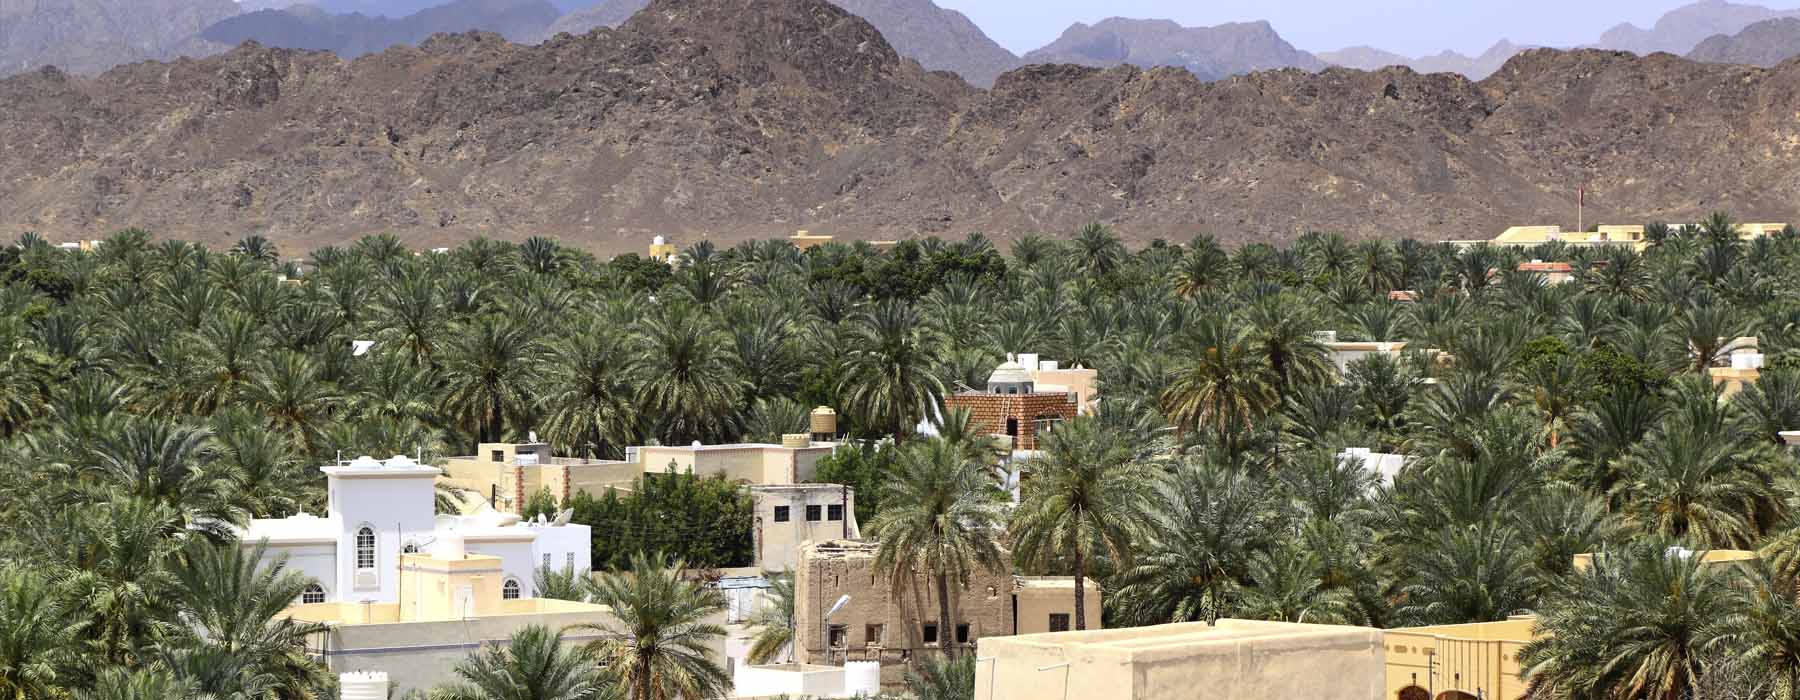 Oman<br class="hidden-md hidden-lg" /> February Holidays